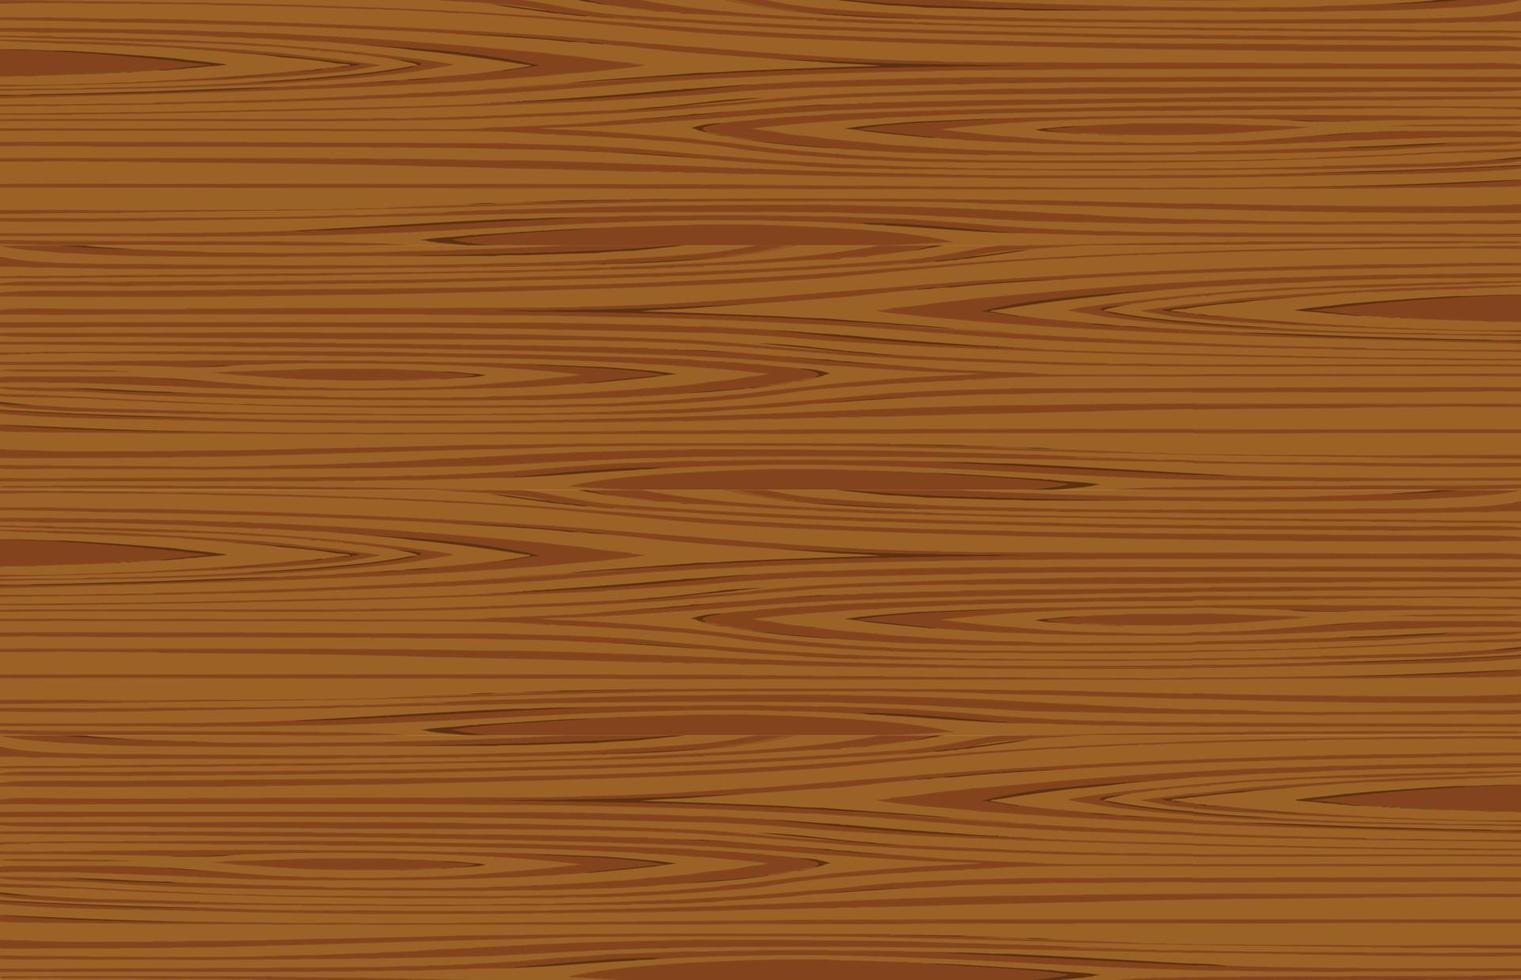 Cartoon-Holz-Textur-Hintergrund. Holz-Schneidebrett-Textur-Design. braune Holzwand, Planke, Tisch oder Bodenfläche. Schneidebrett aus Holz. Vektor-Illustration vektor